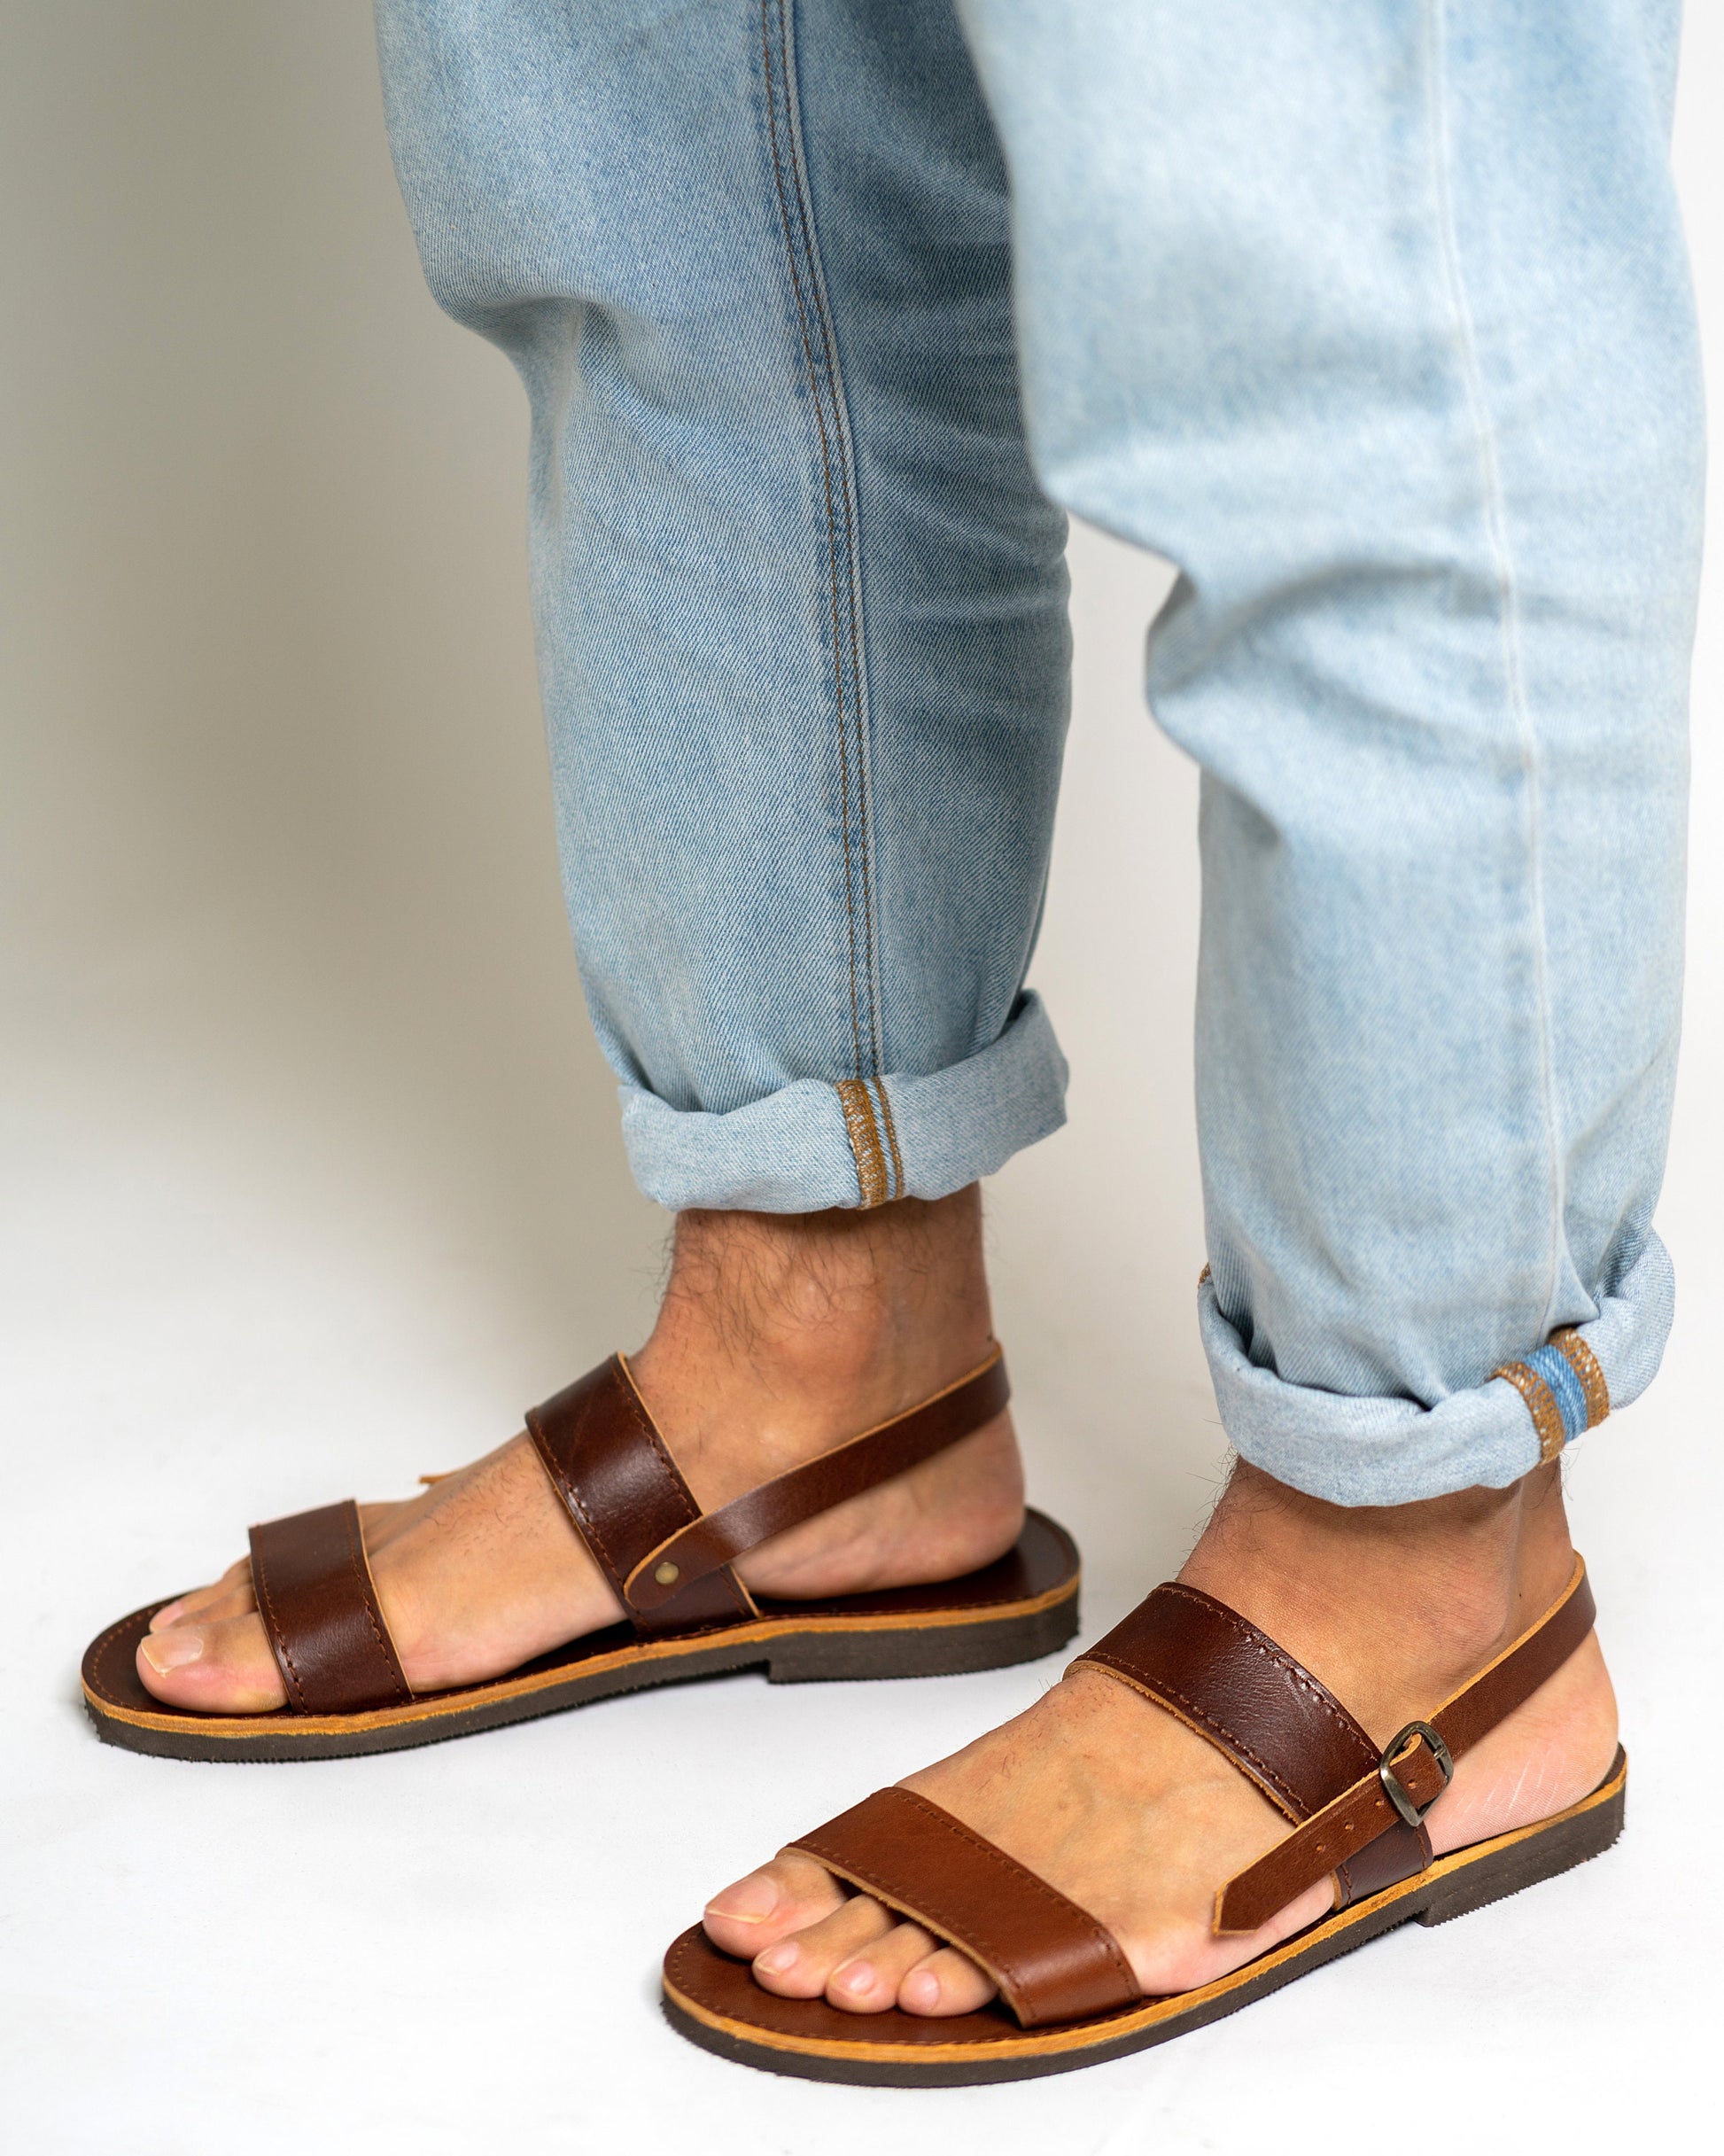 Μens leather sandals, Greek leather sandals, Brown strappy sandals, Flat mens leather sandals